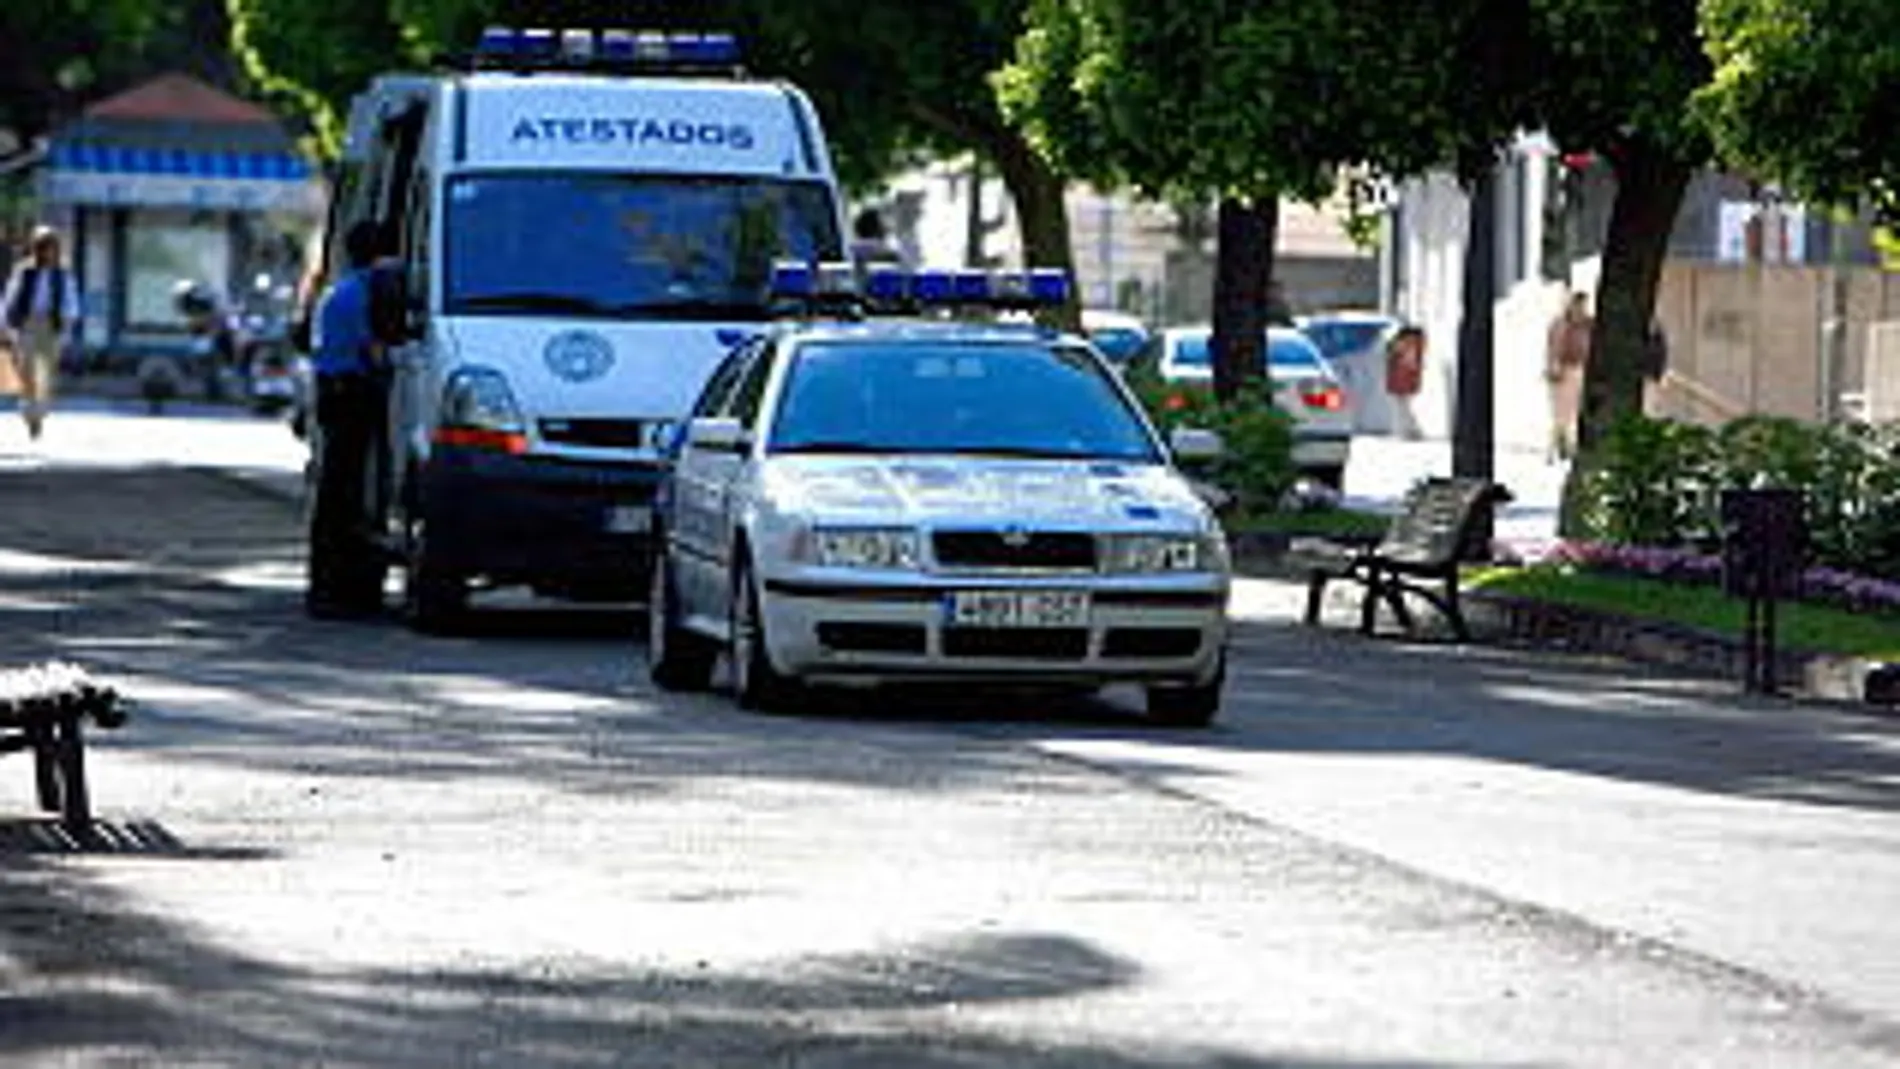 El agresor fue detenido poco después del suceso, ha informado hoy la Policía Local de Santa Cruz de Tenerife.